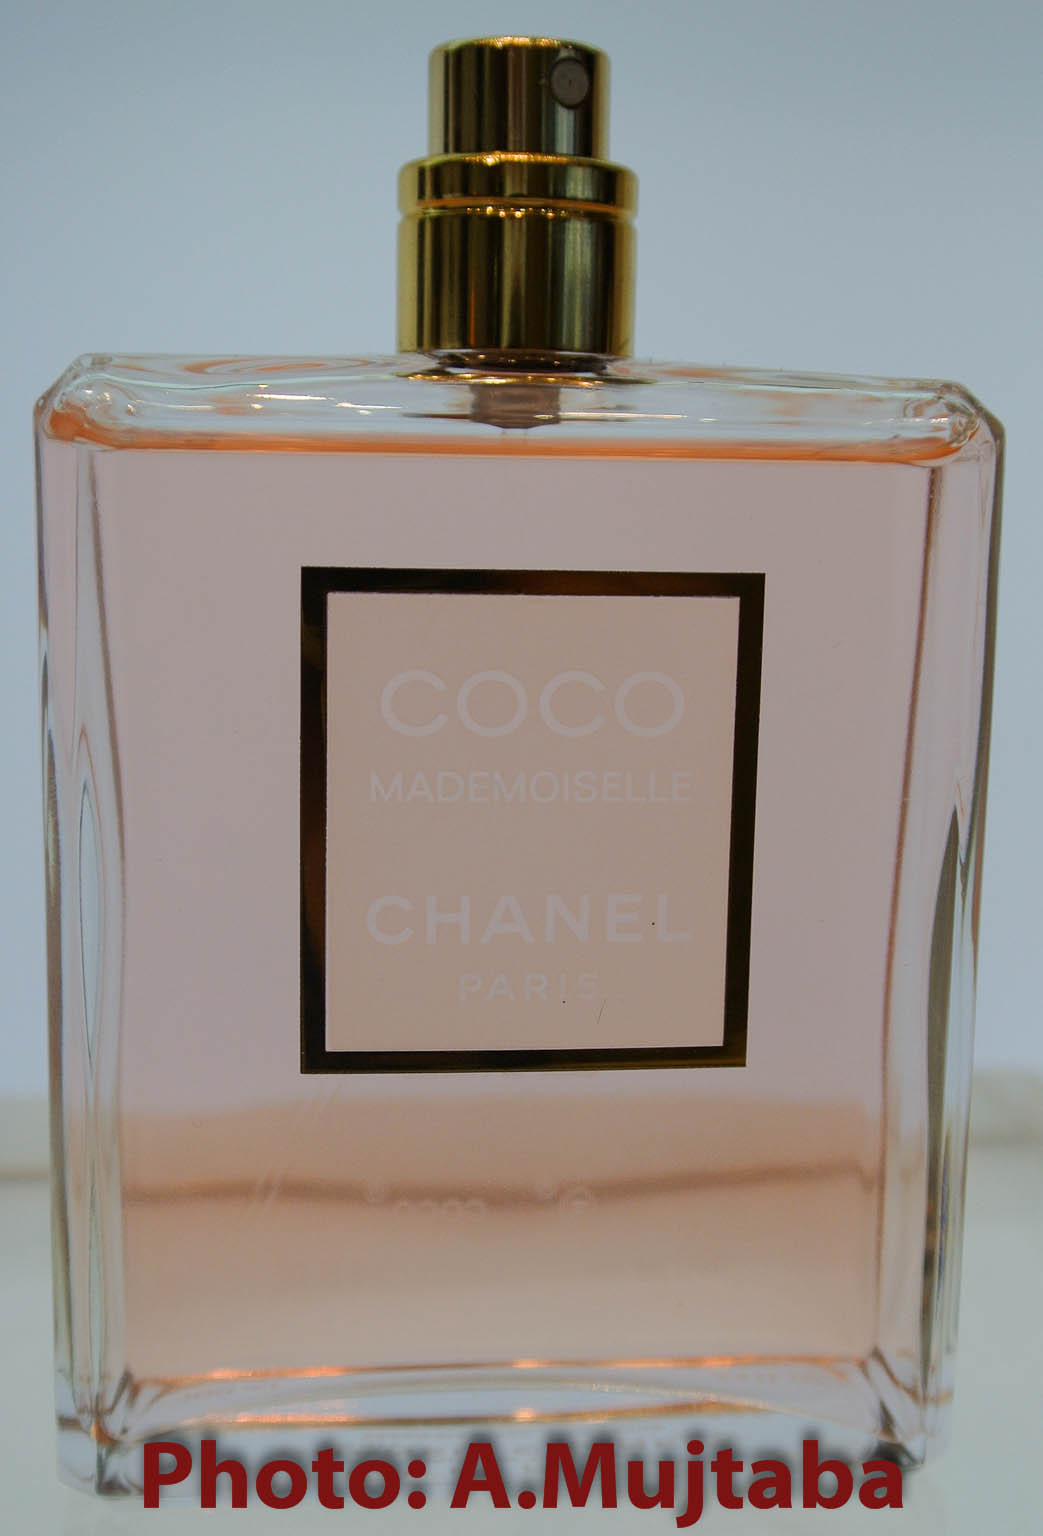 Connoisseur De Parfum: Perfume Review: Chanel Coco Mademoiselle